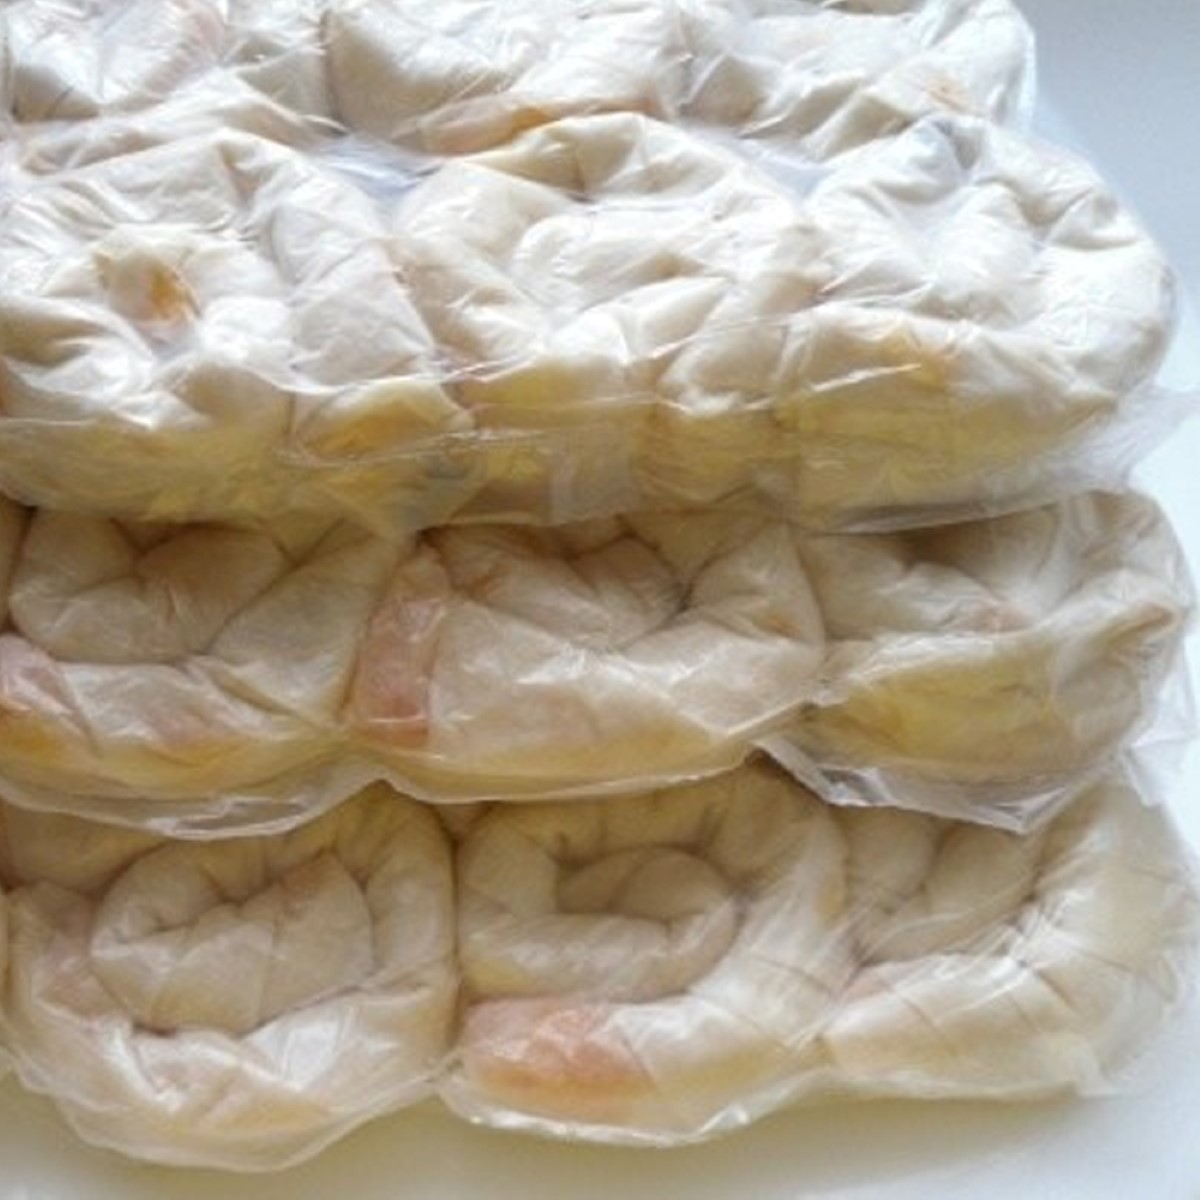 Dondurulmuş patatesli gül böreği 10 Kiloluk ambalajlarda Börsan marka gül böreği